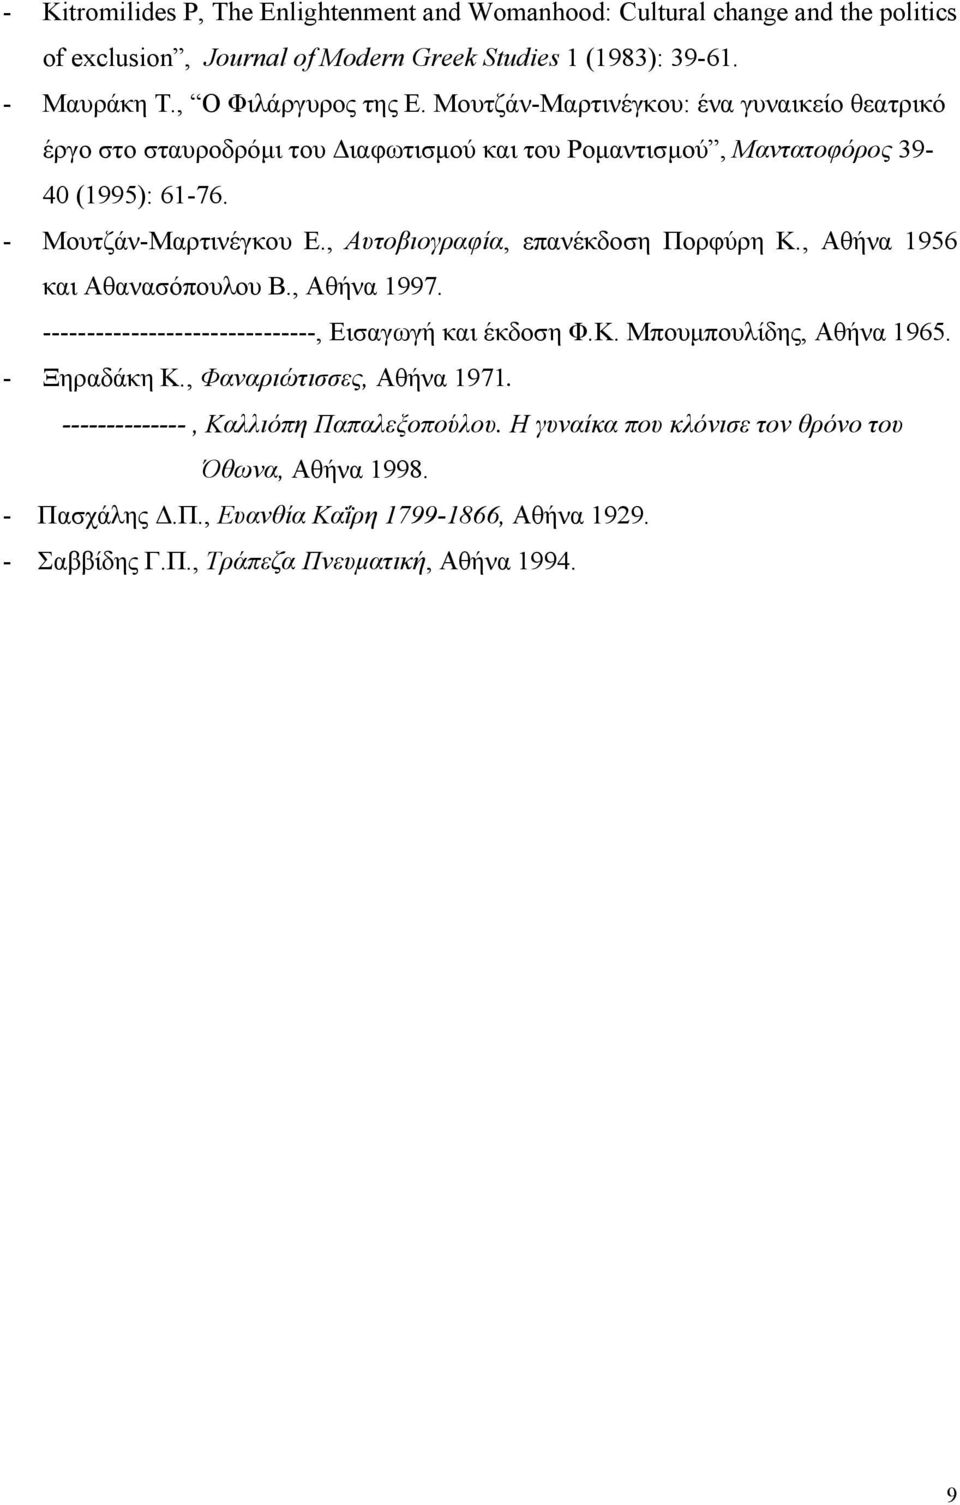 , Αυτοβιογραφία, επανέκδοση Πορφύρη Κ., Αθήνα 1956 και Αθανασόπουλου Β., Αθήνα 1997. -------------------------------, Εισαγωγή και έκδοση Φ.Κ. Μπουµπουλίδης, Αθήνα 1965. - Ξηραδάκη Κ.